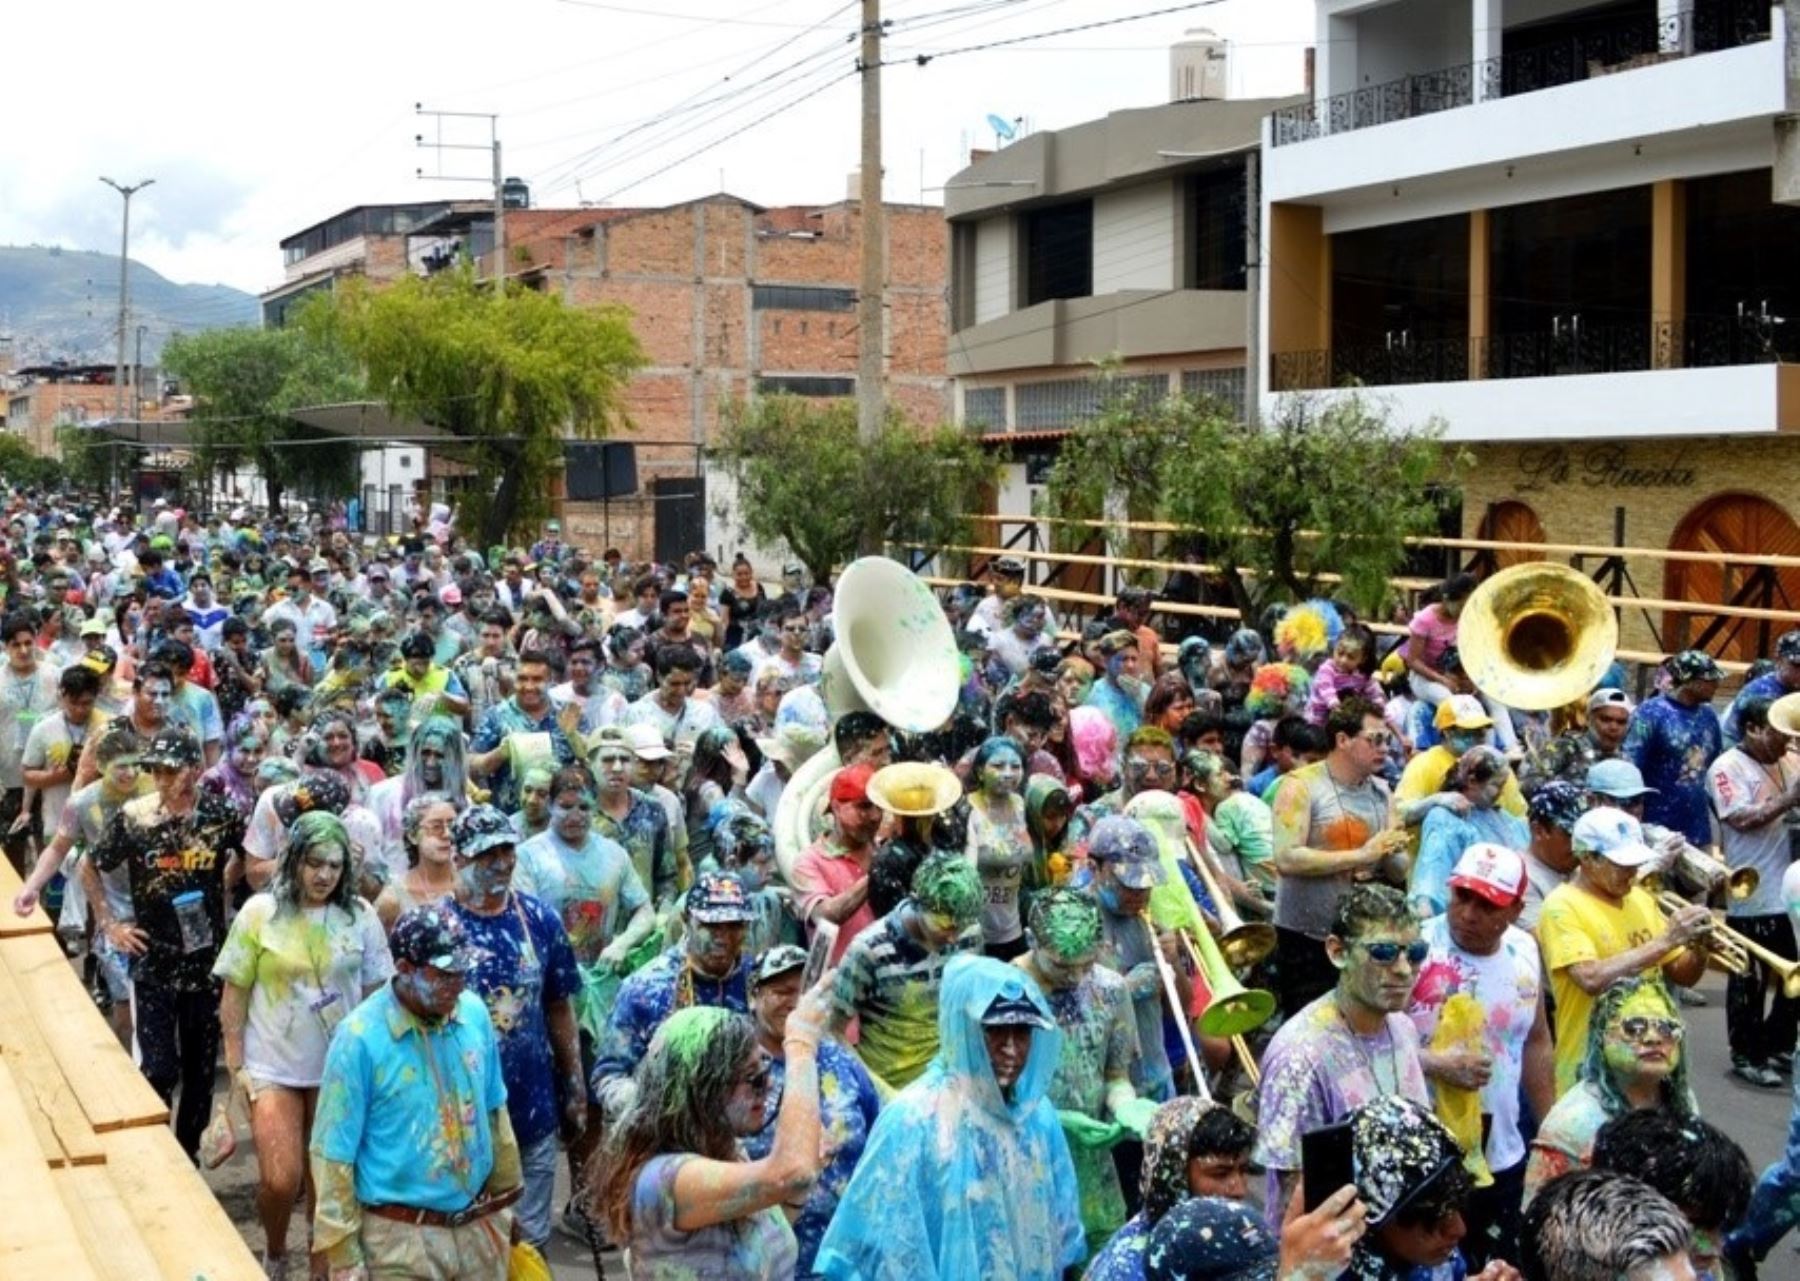 Del 18 al 22 de febrero se celebrarán los días centrales del tradicional carnaval de Cajamarca. Foto: Eduard Lozano.